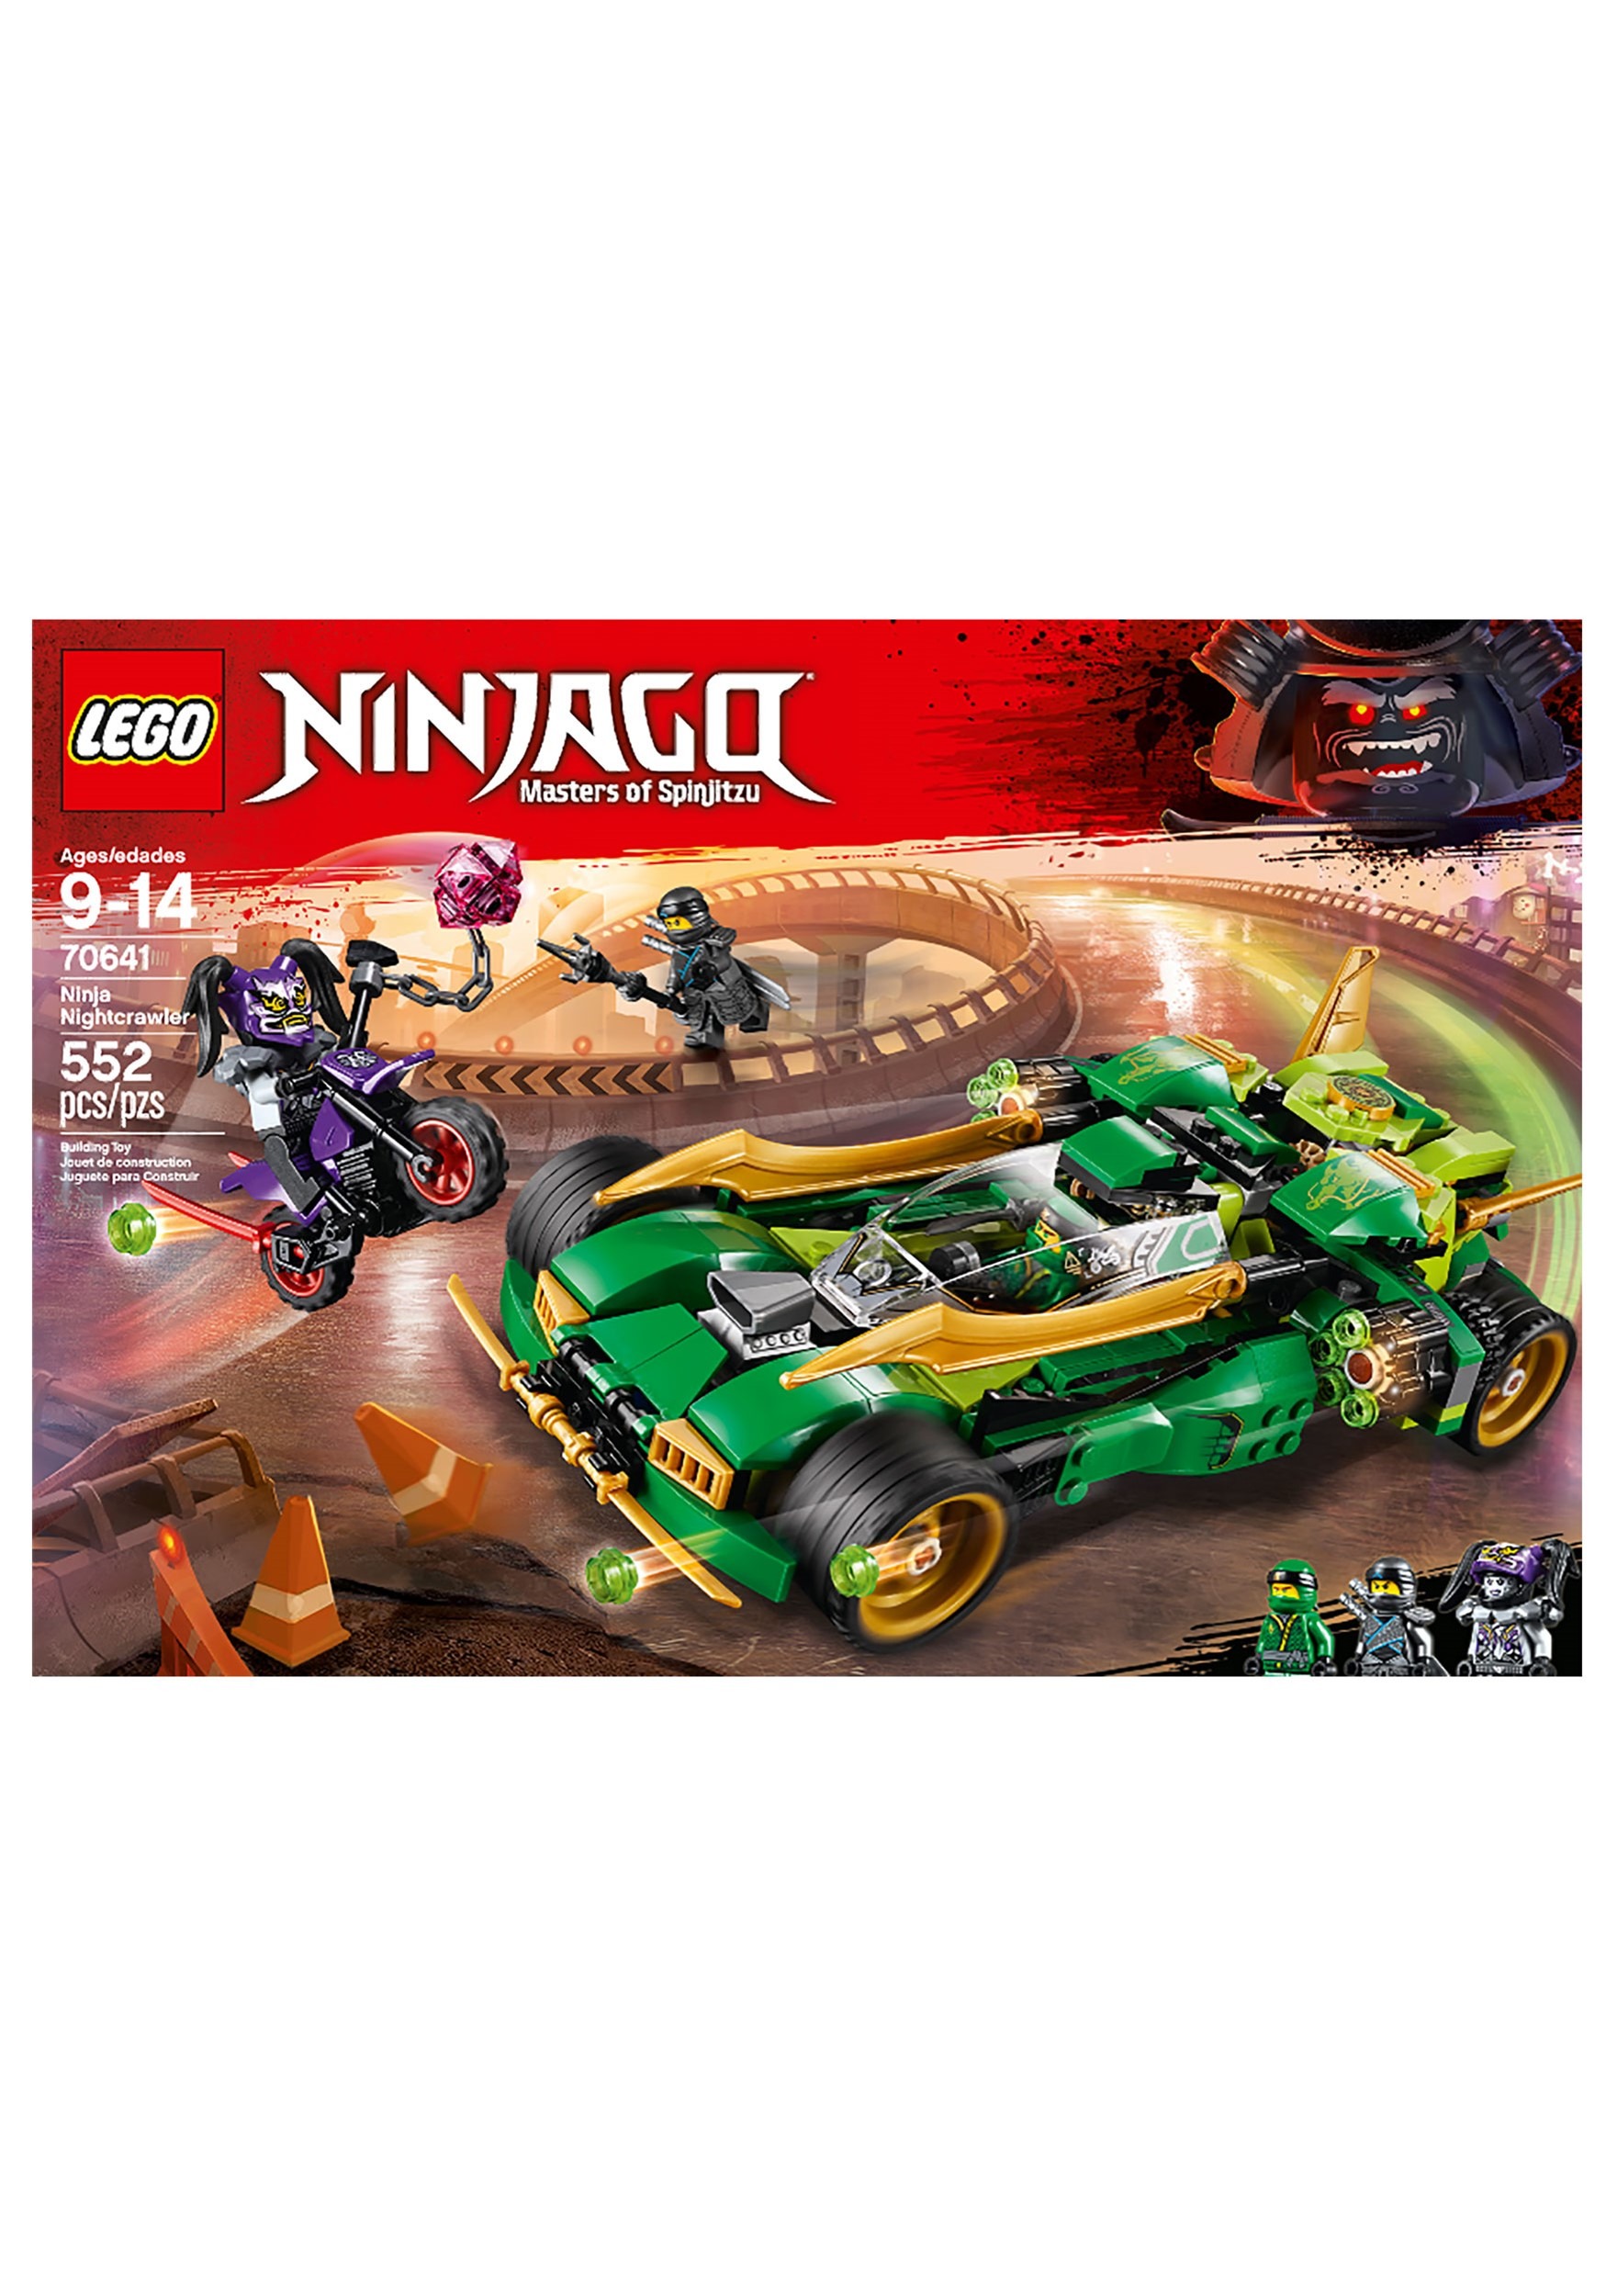 ninjago lego nightcrawler